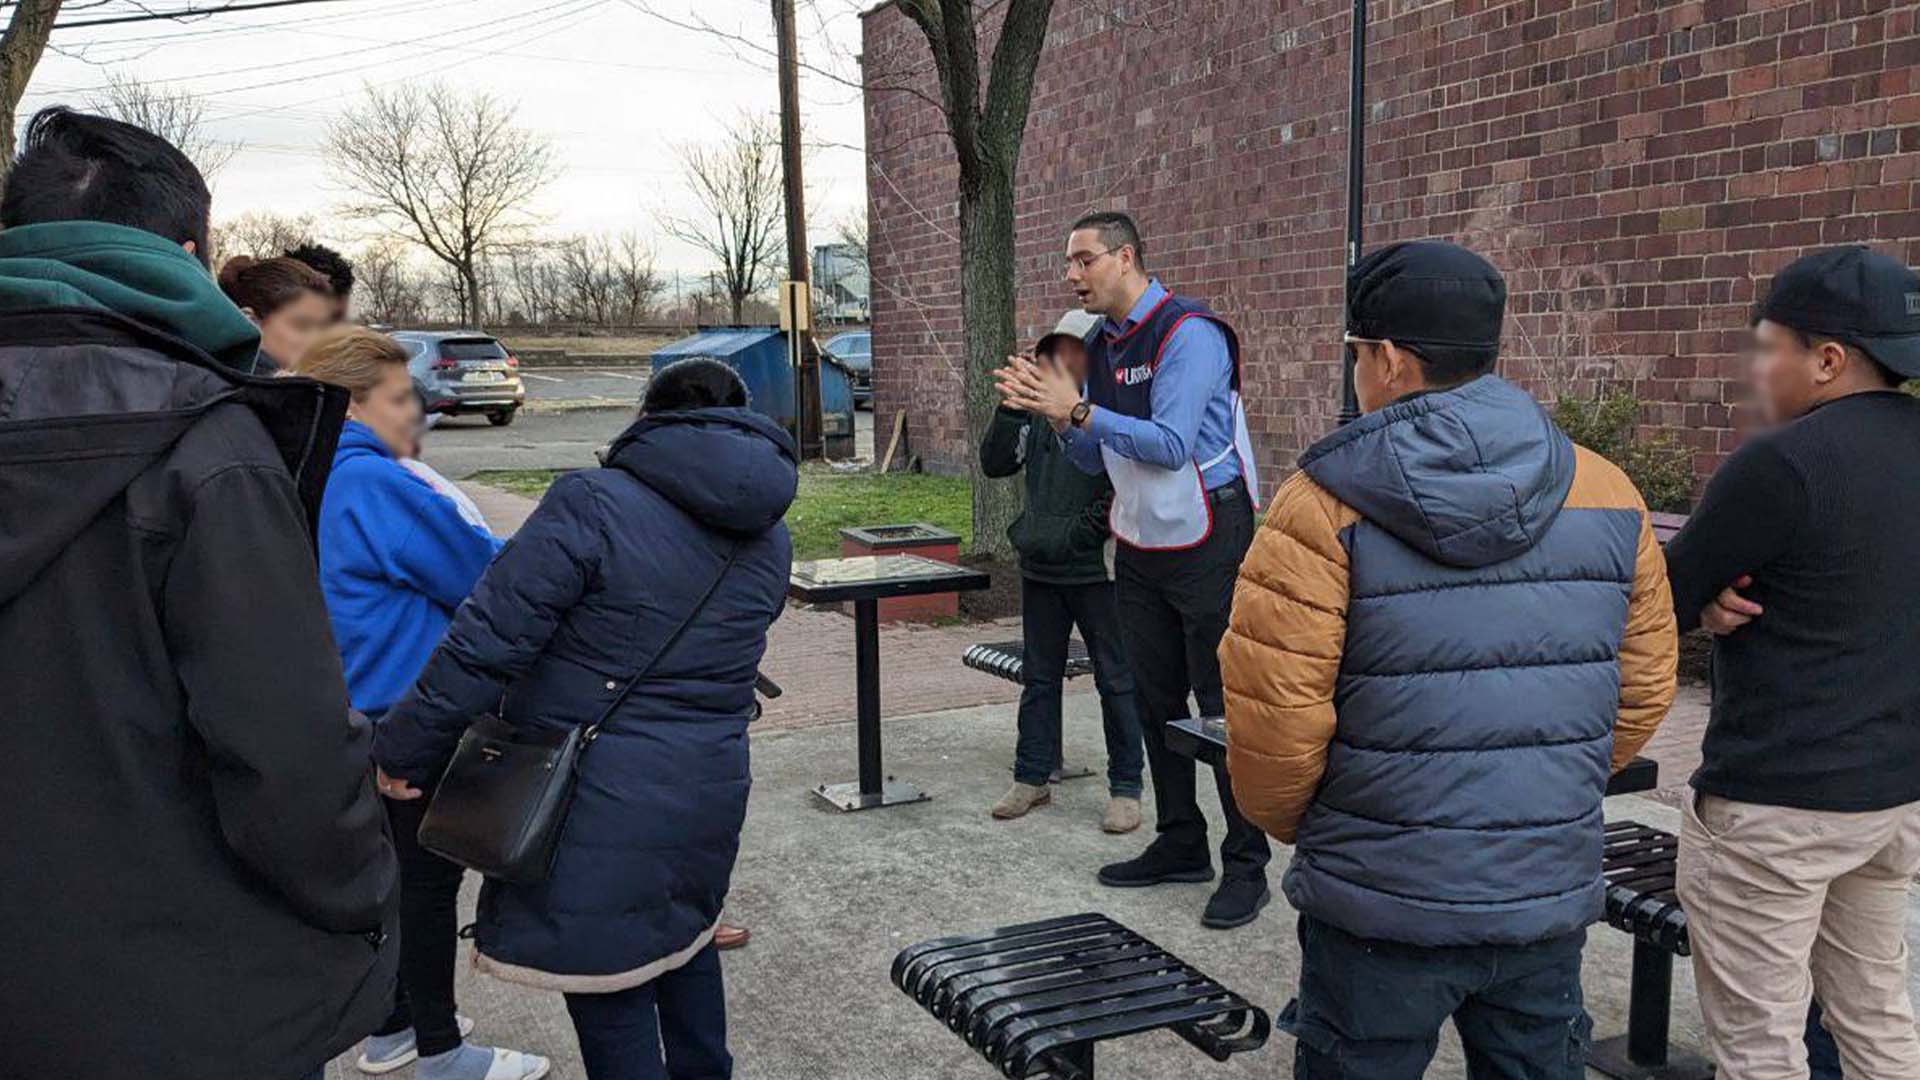 Los evangelistas en Bound Brook, New Jersey cumplieron el propósito de ayudar a los afligidos